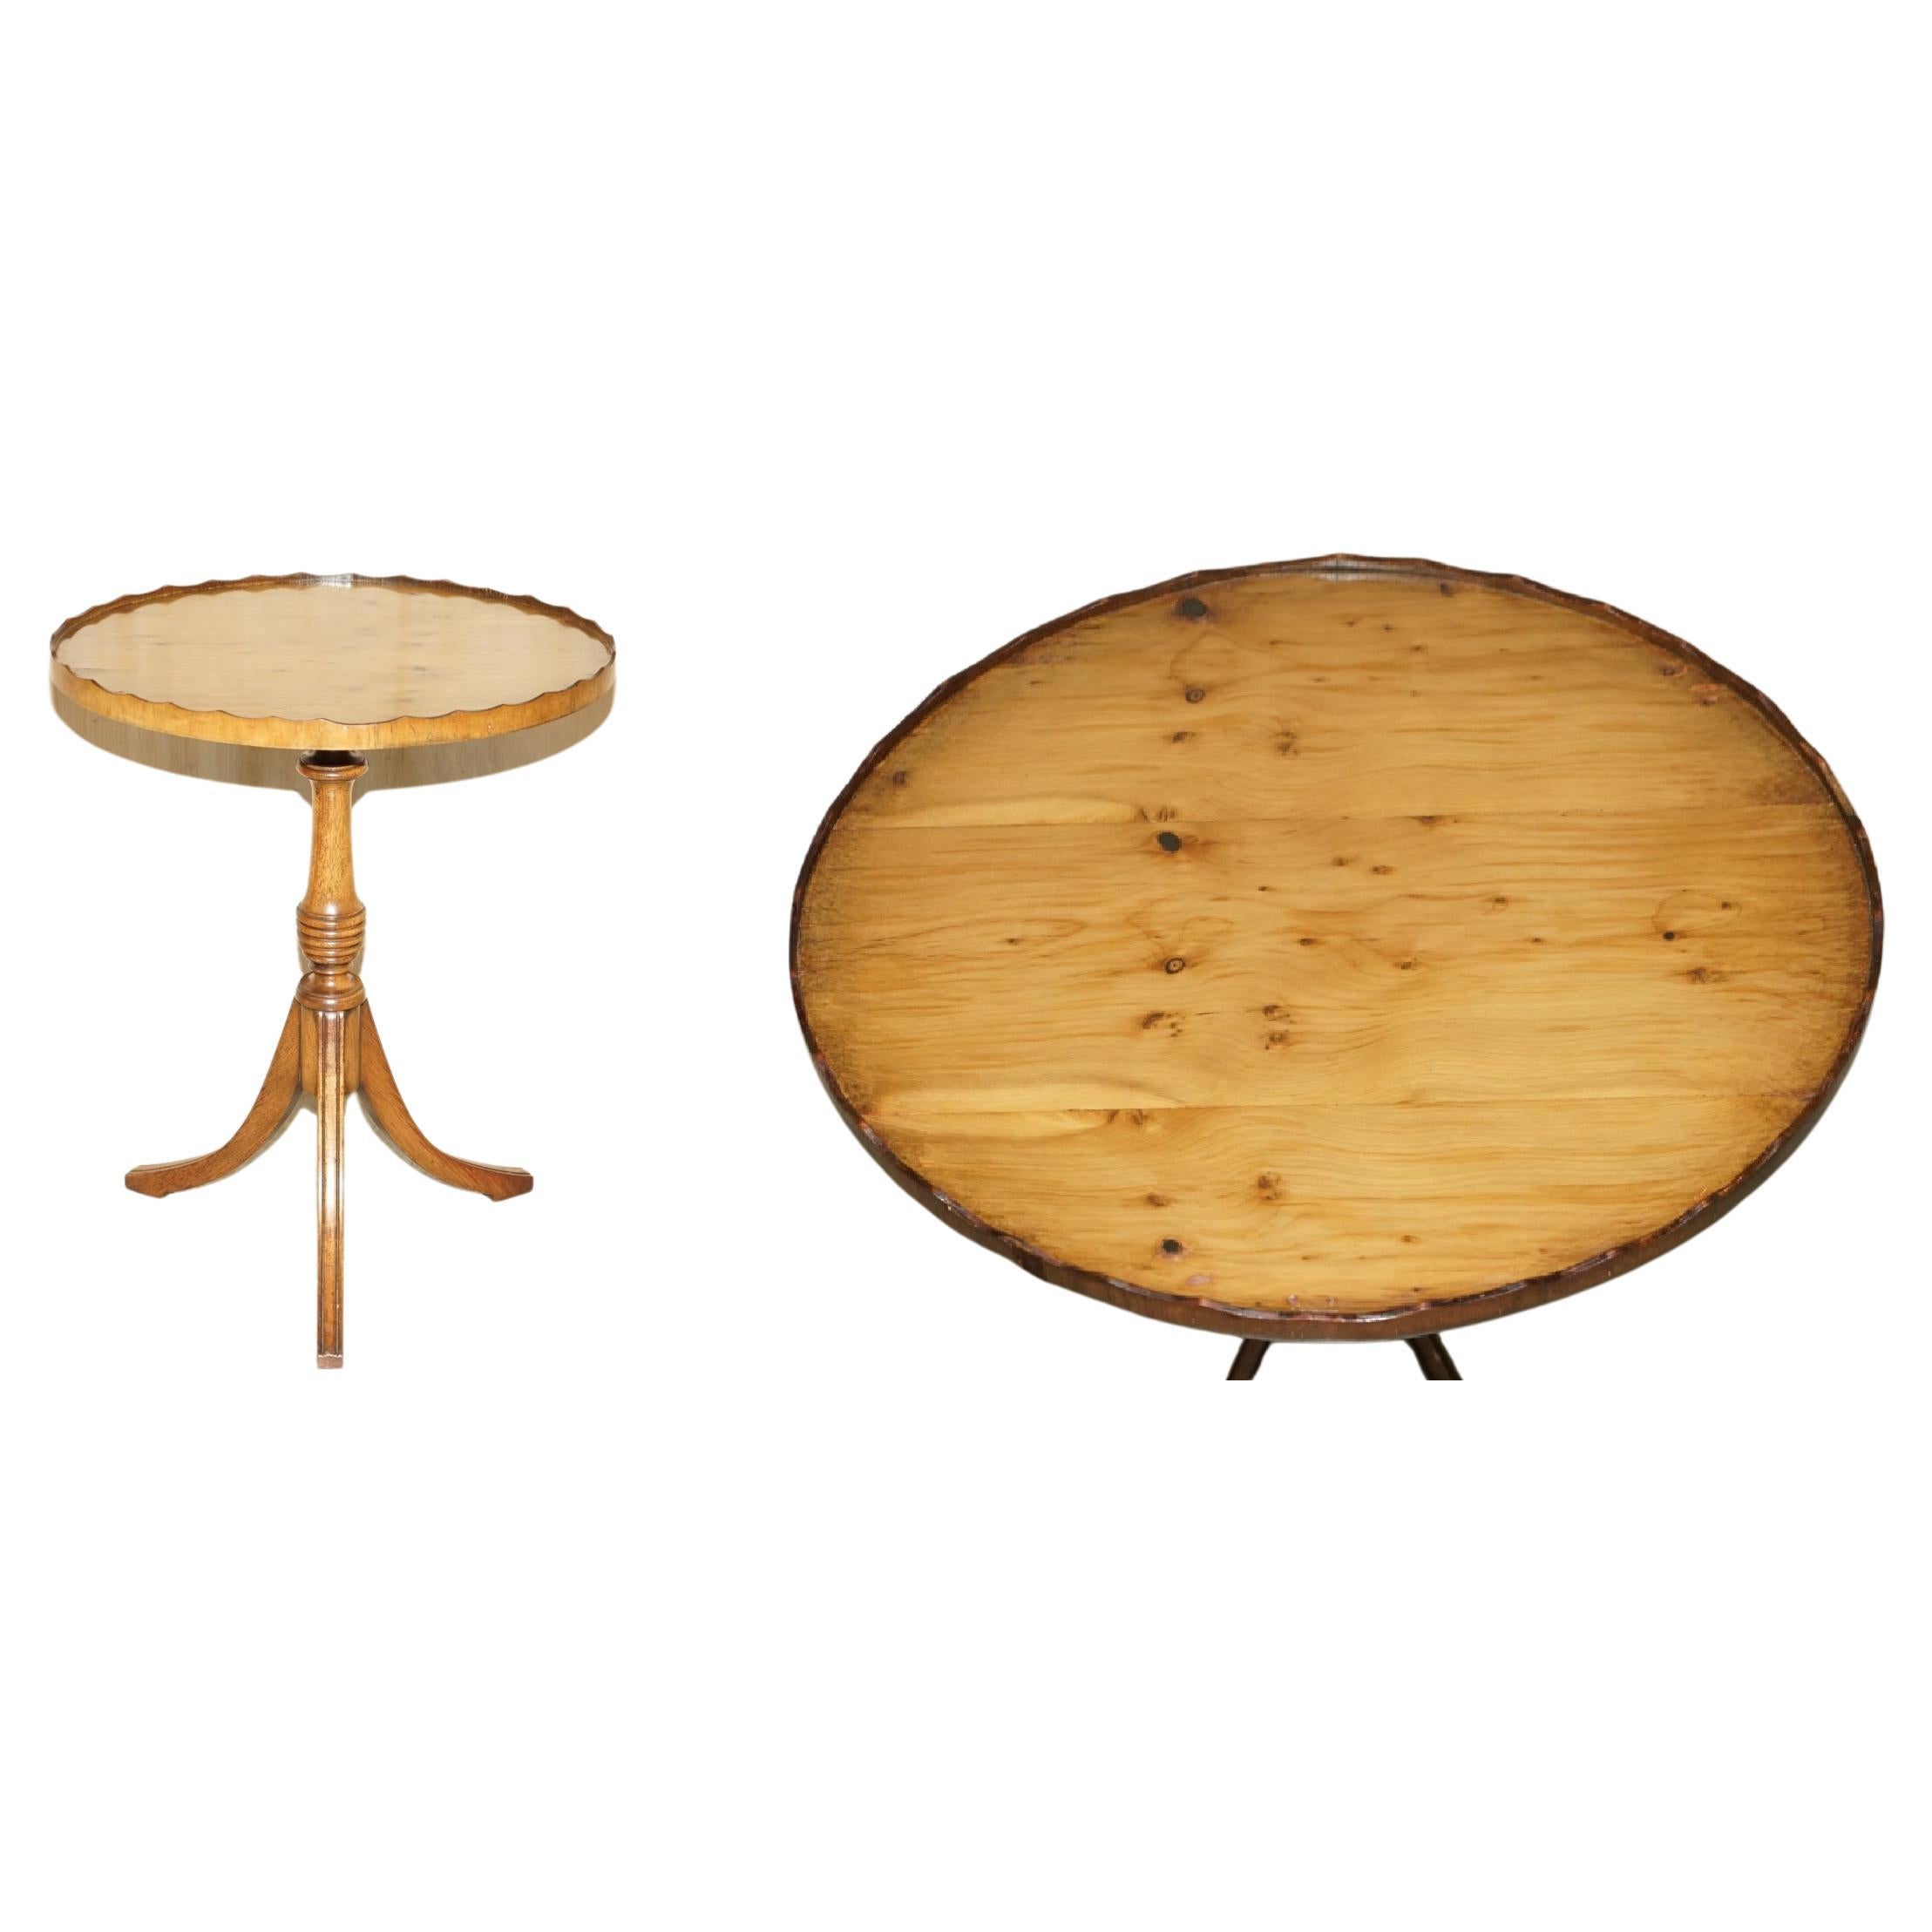 Sublime table d'appoint en bois d'if avec rallonge en galerie sculptée à la main